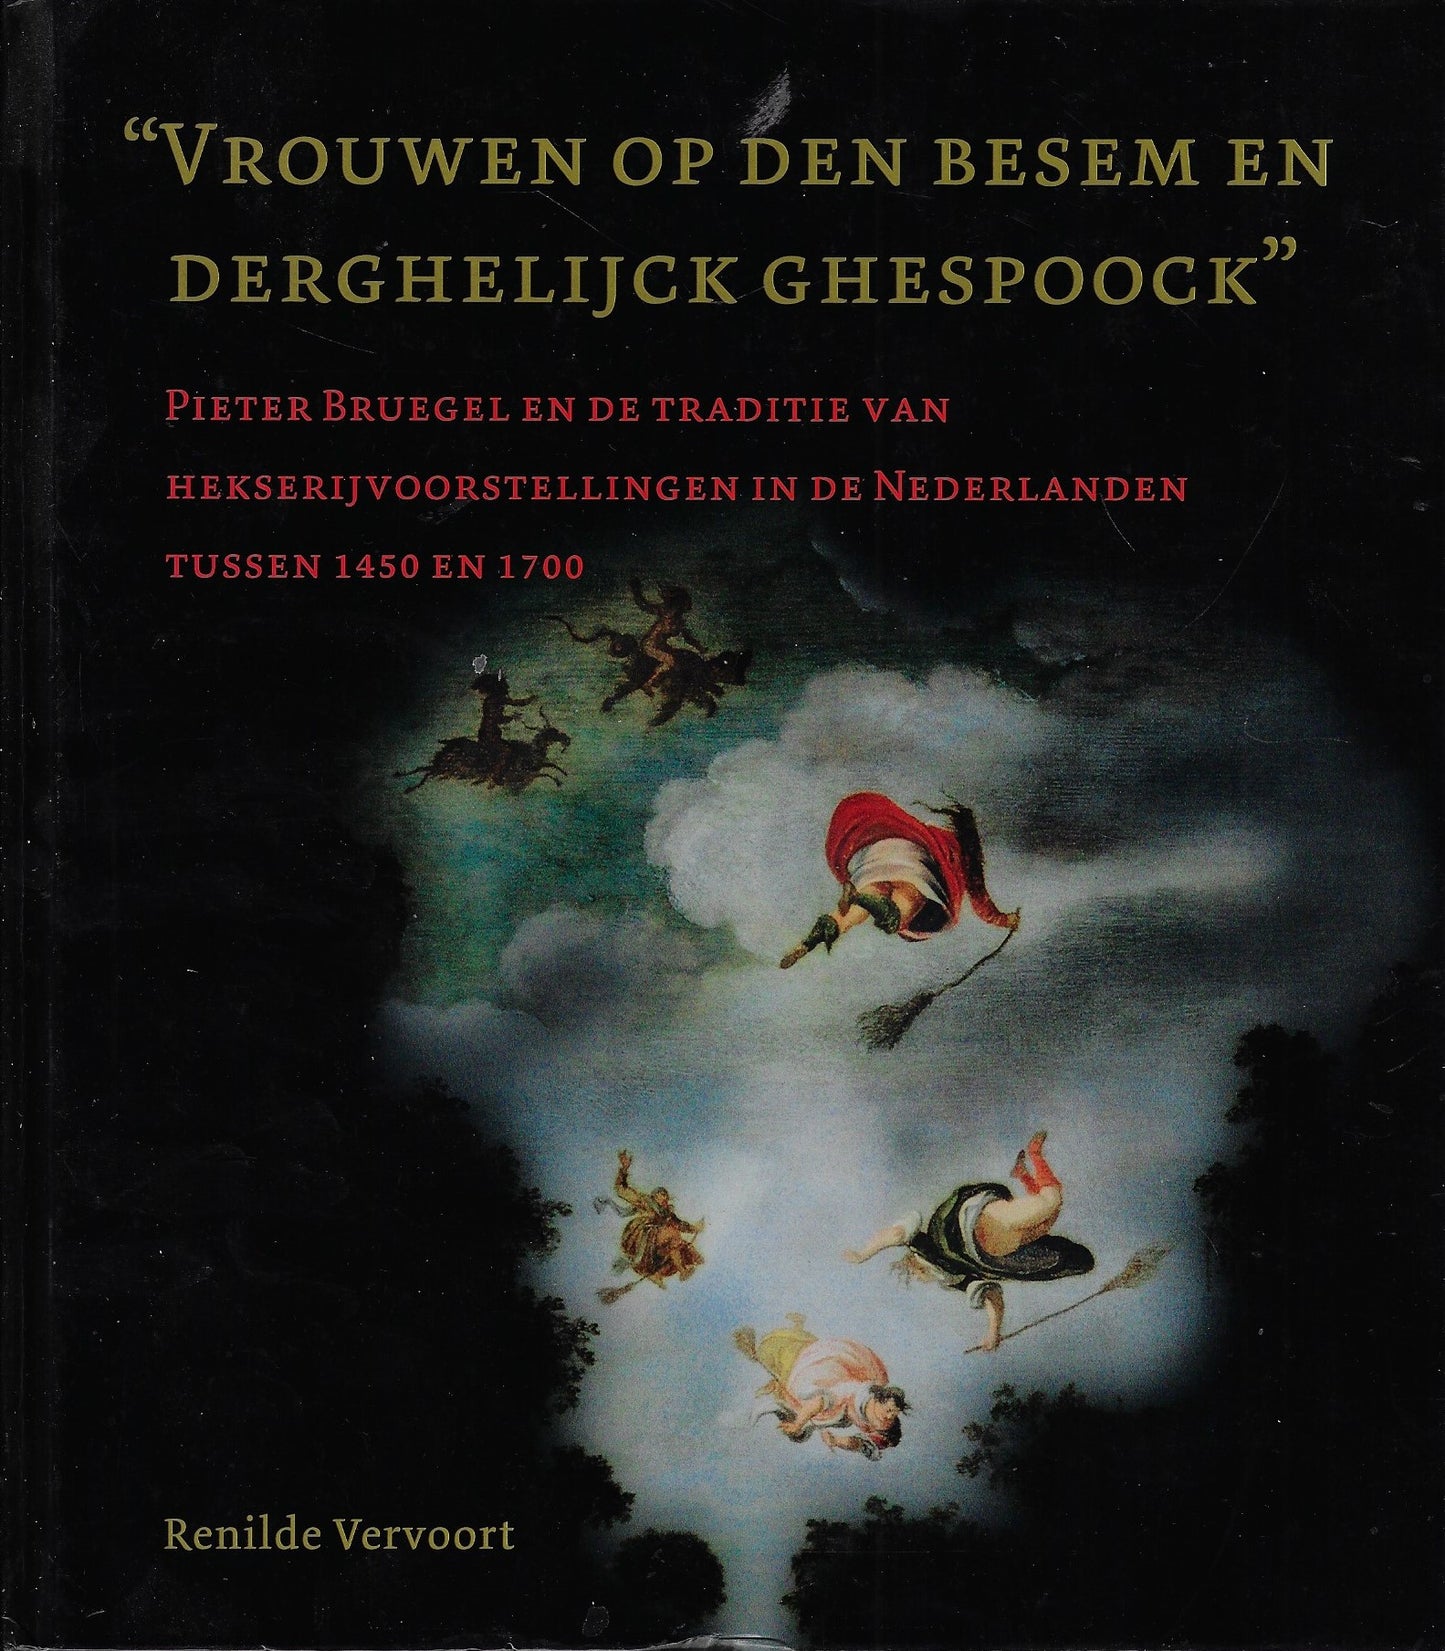 Vrouwen op den besem en derghelijck ghespoock - Pieter Bruegel en de traditie van hekserijvoorstellingen in de Nederlanden tussen 1450 en 1700